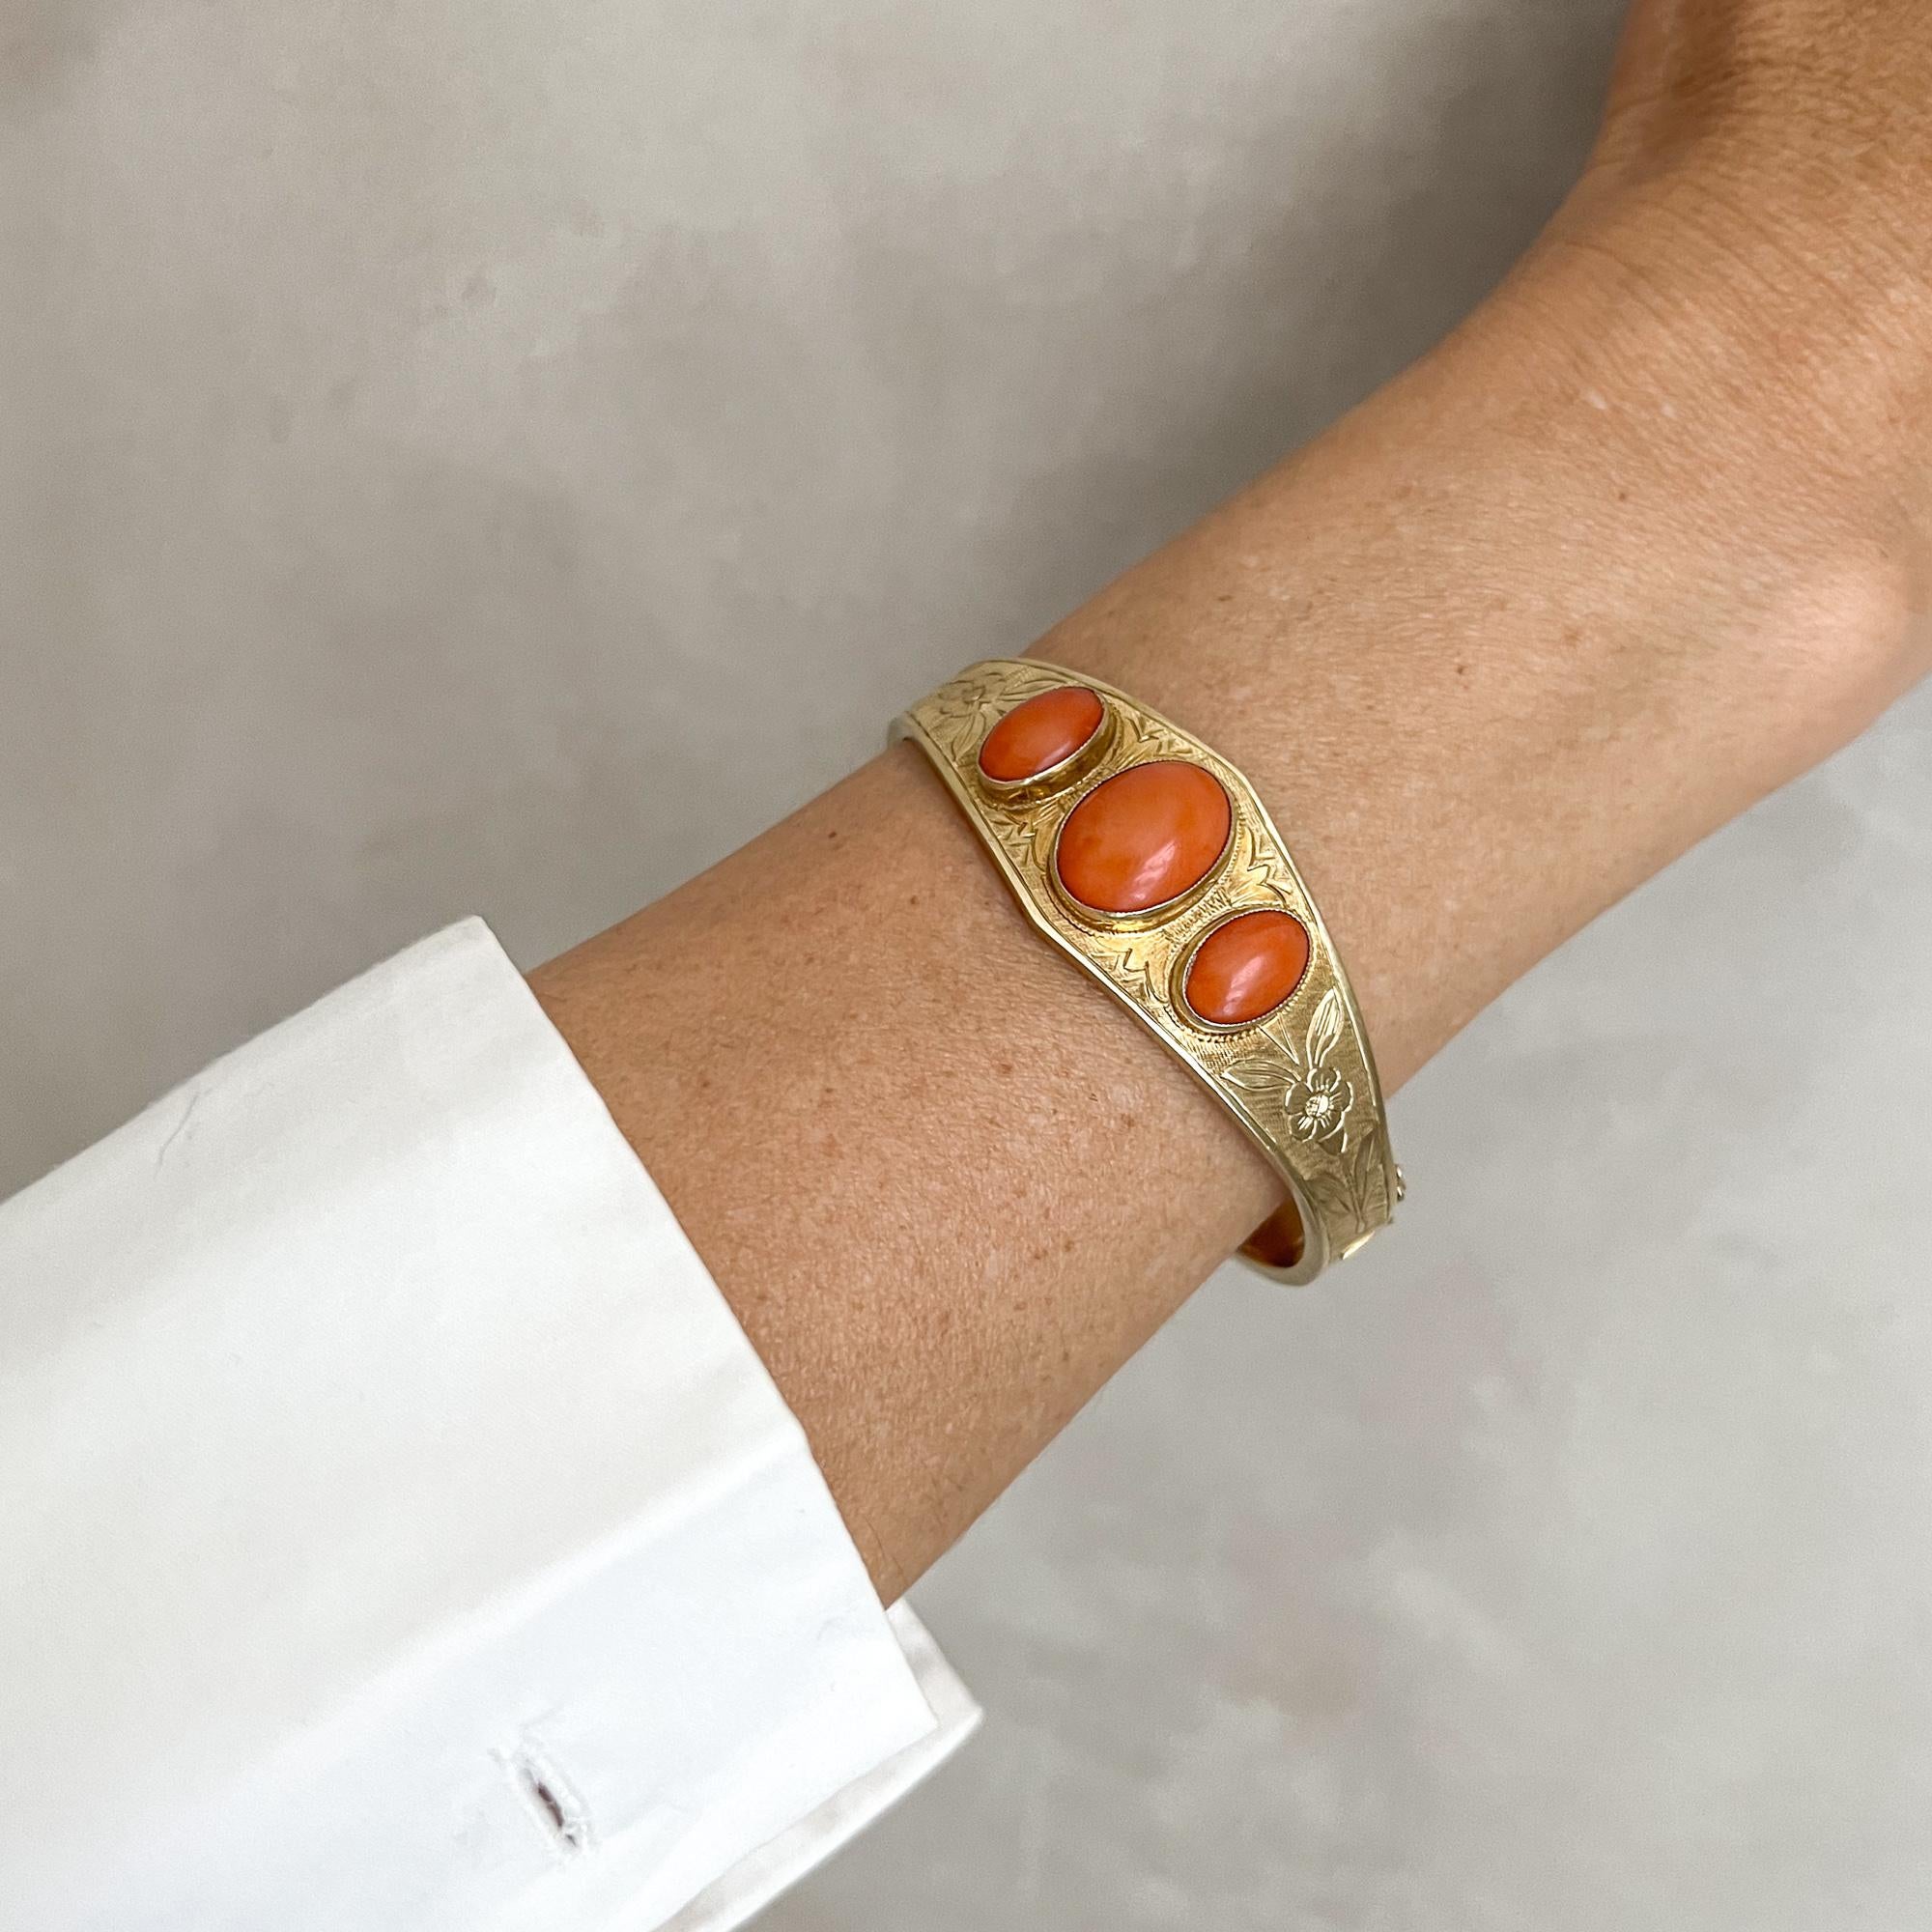 Ce bracelet en or jaune 14 carats est serti de trois pierres naturelles en corail rouge. Ce bracelet artisanal de style Art déco est serti de trois pierres de corail naturel de forme ovale taillées en cabochon. Les pierres précieuses sont toutes